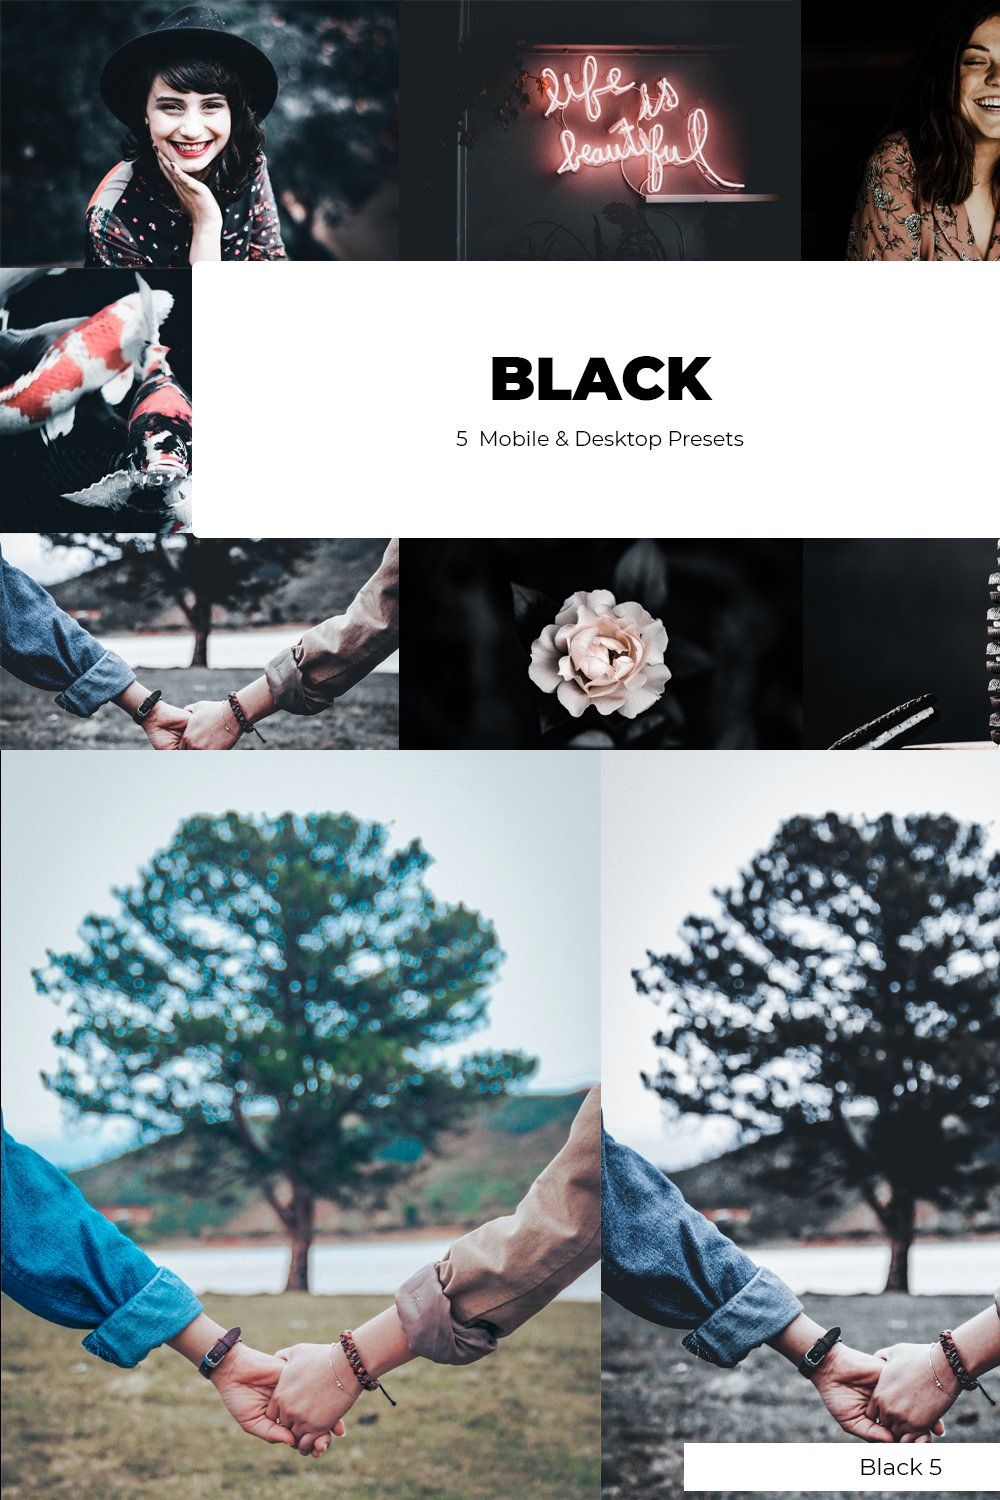 BLACK Lightroom Presets pinterest preview image.